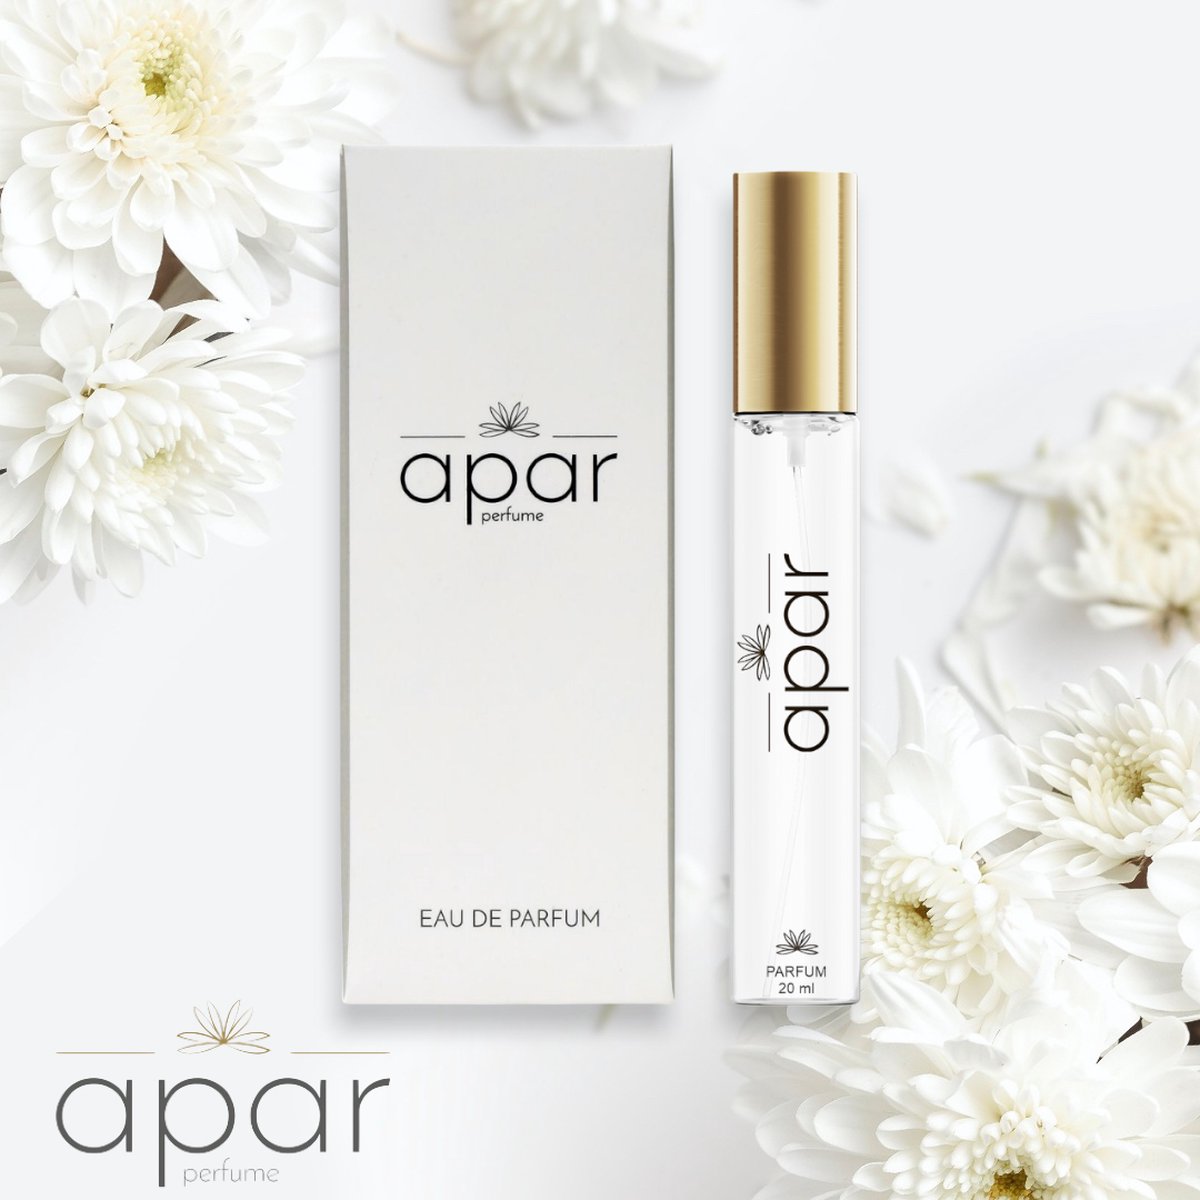 ❤Dure merk geuren voor een eerlijke prijs❤APAR Parfum EDP - 20ml - Nummer F195 Standard -